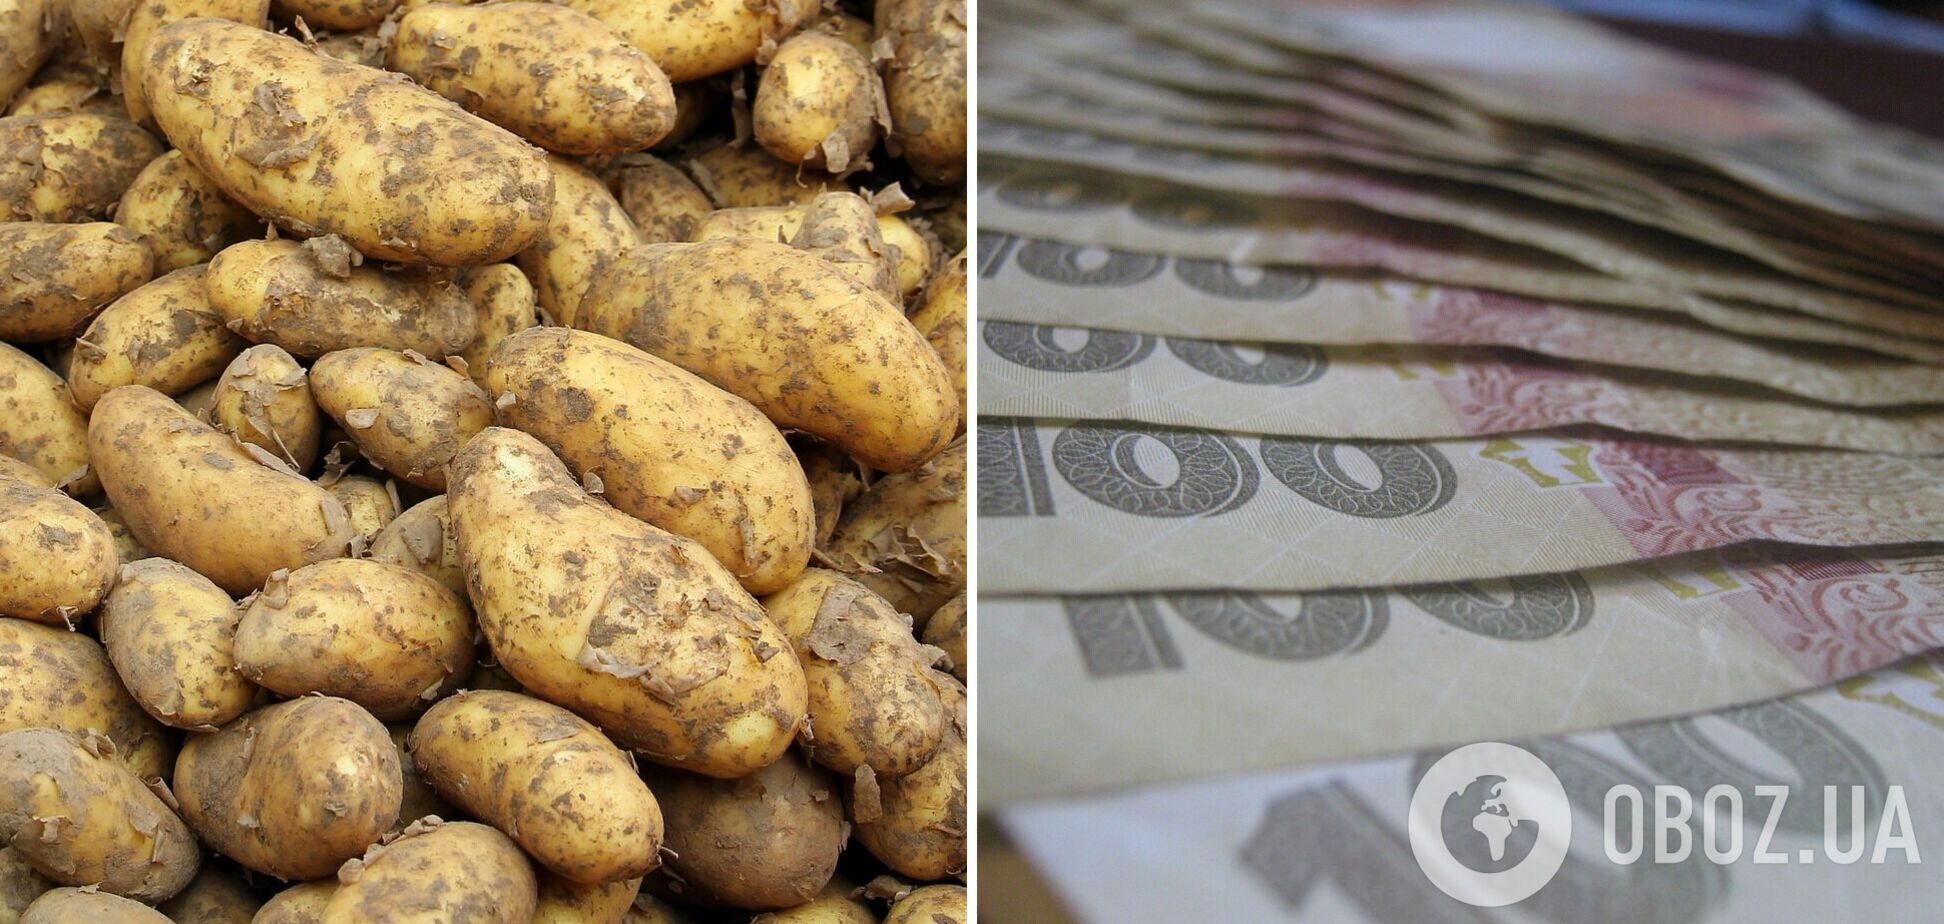 Цены на картошку в ОРДЛО взлетели